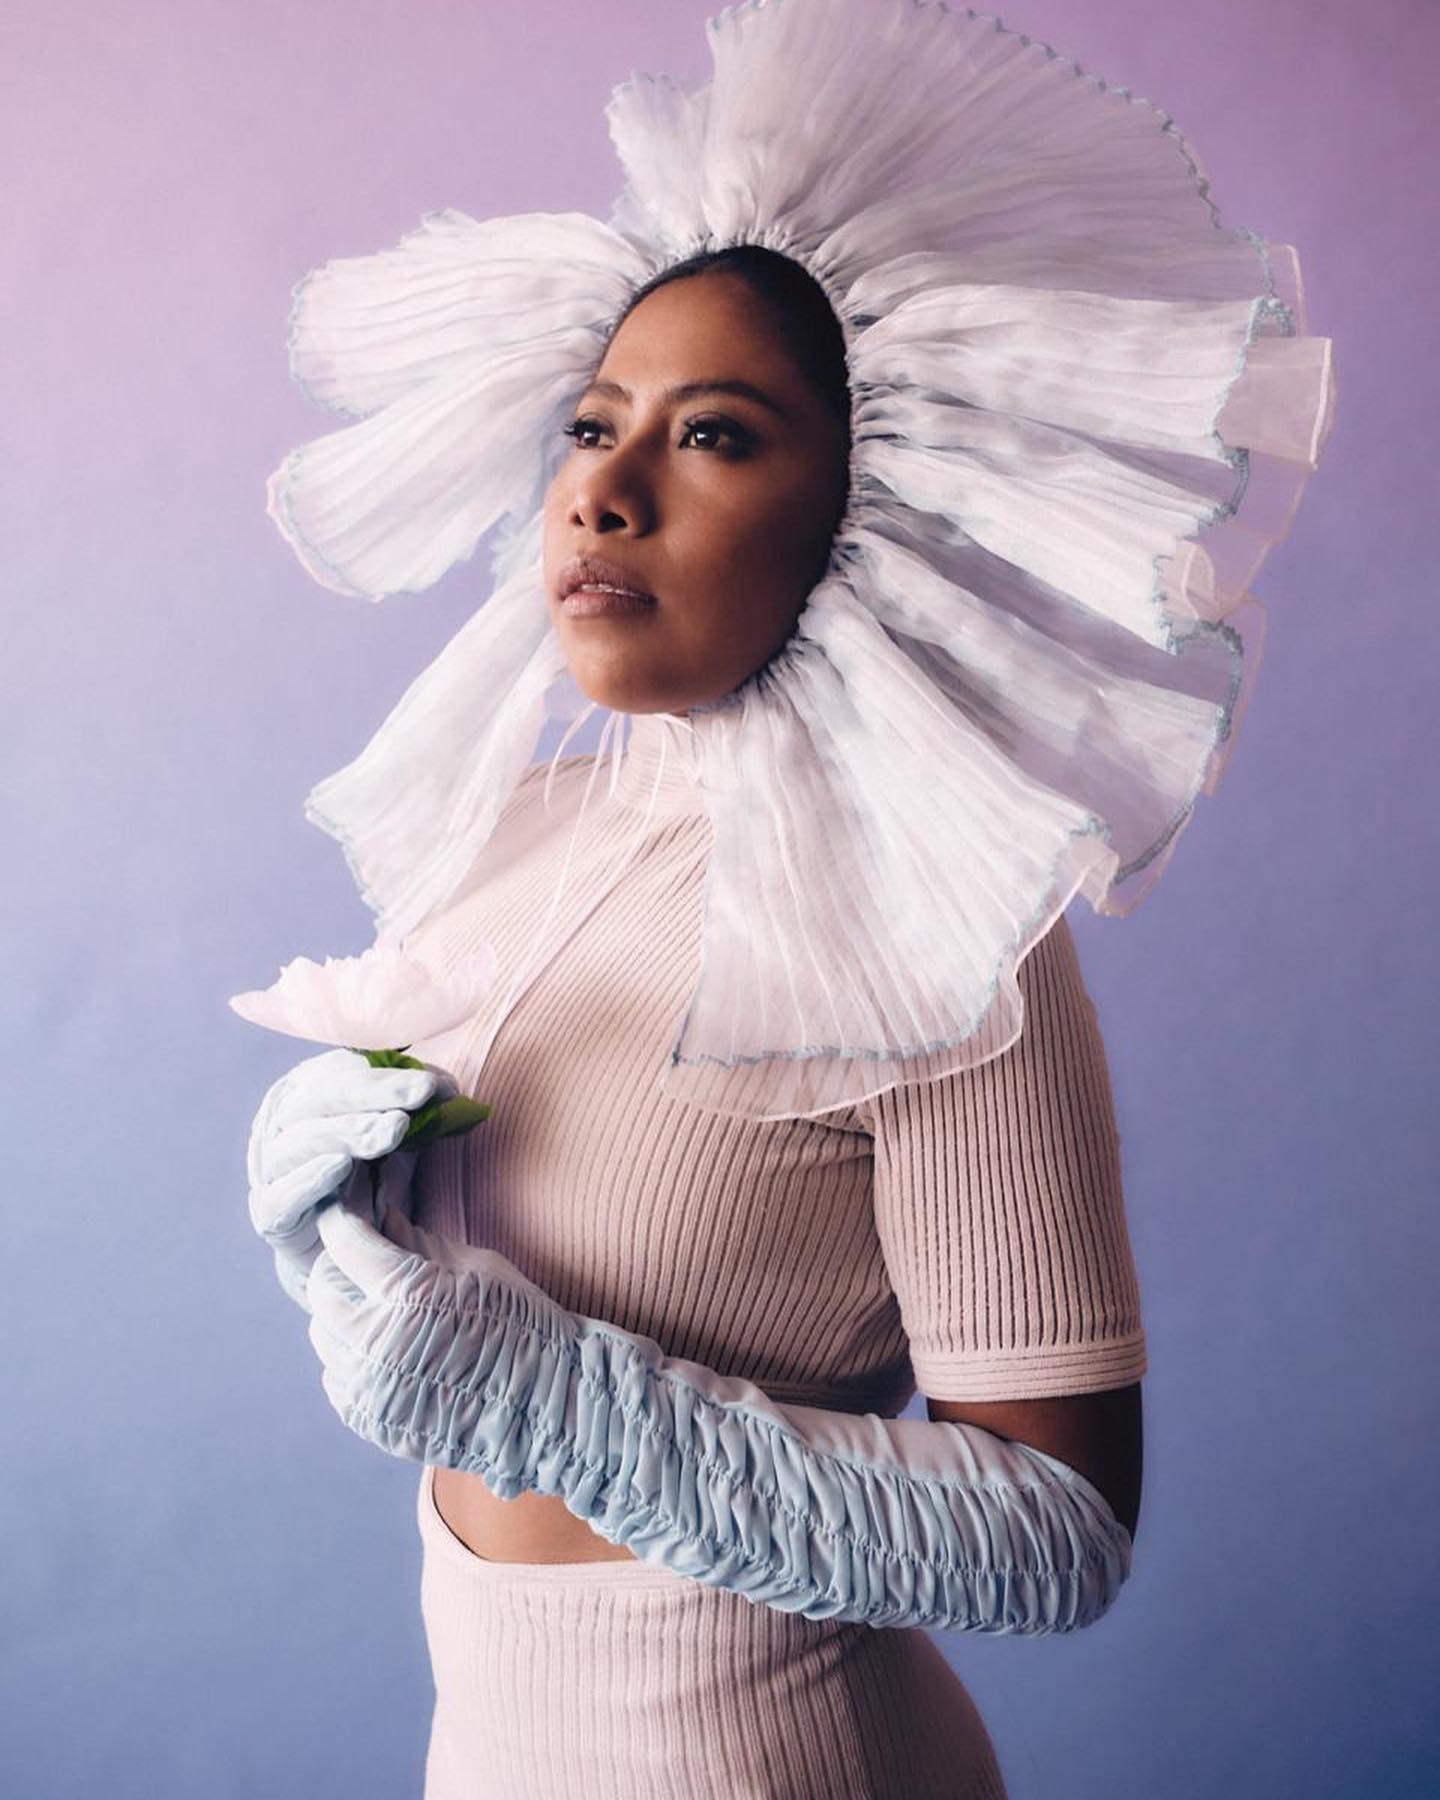 sabiaspalavras.com - Atriz indígena Yalitza Aparicio esbanja estilo em colaboração com a Dior: “Me sinto orgulhosa de ser indígena”